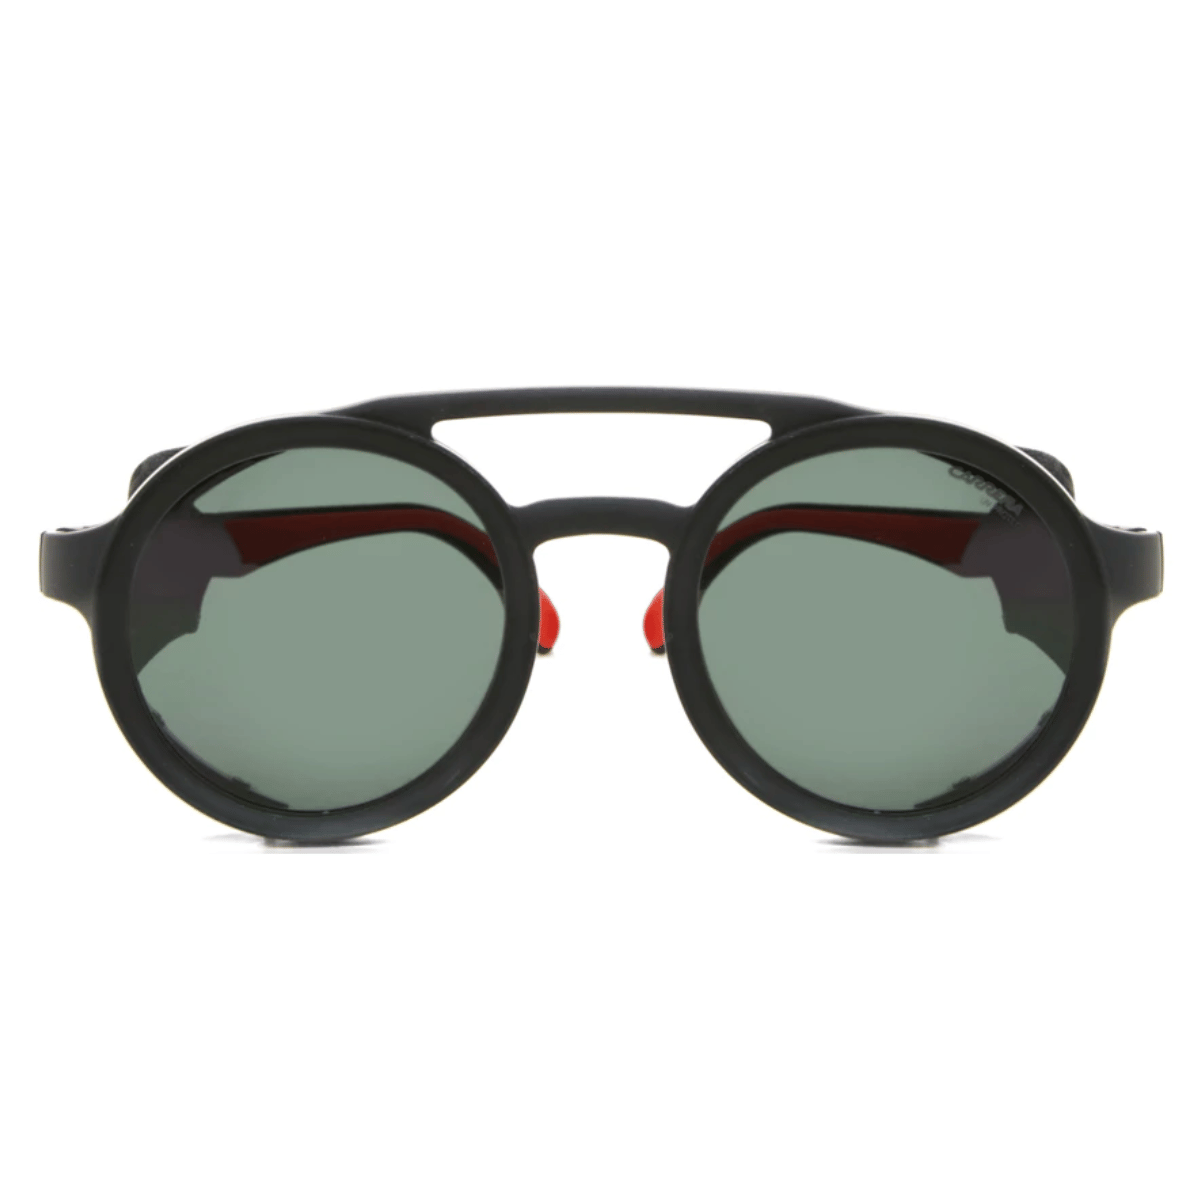 "Stylish Rounded Sunglasses For Unisex"